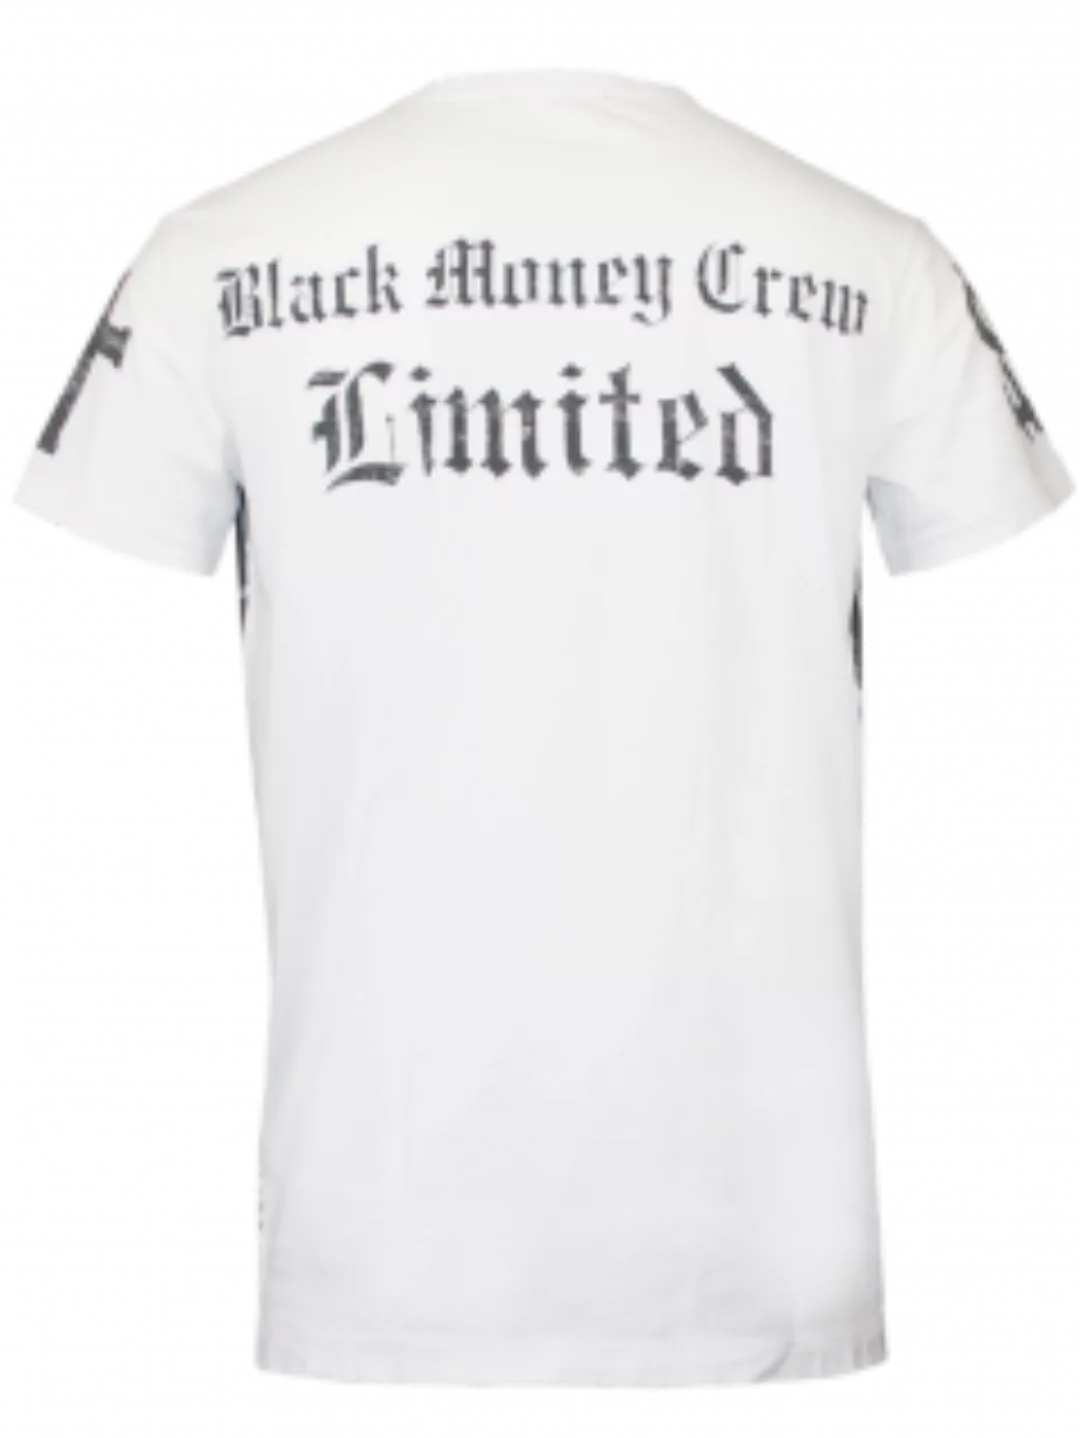 Black Money Crew Herren Shirt Money Maker (L) (wei) günstig online kaufen